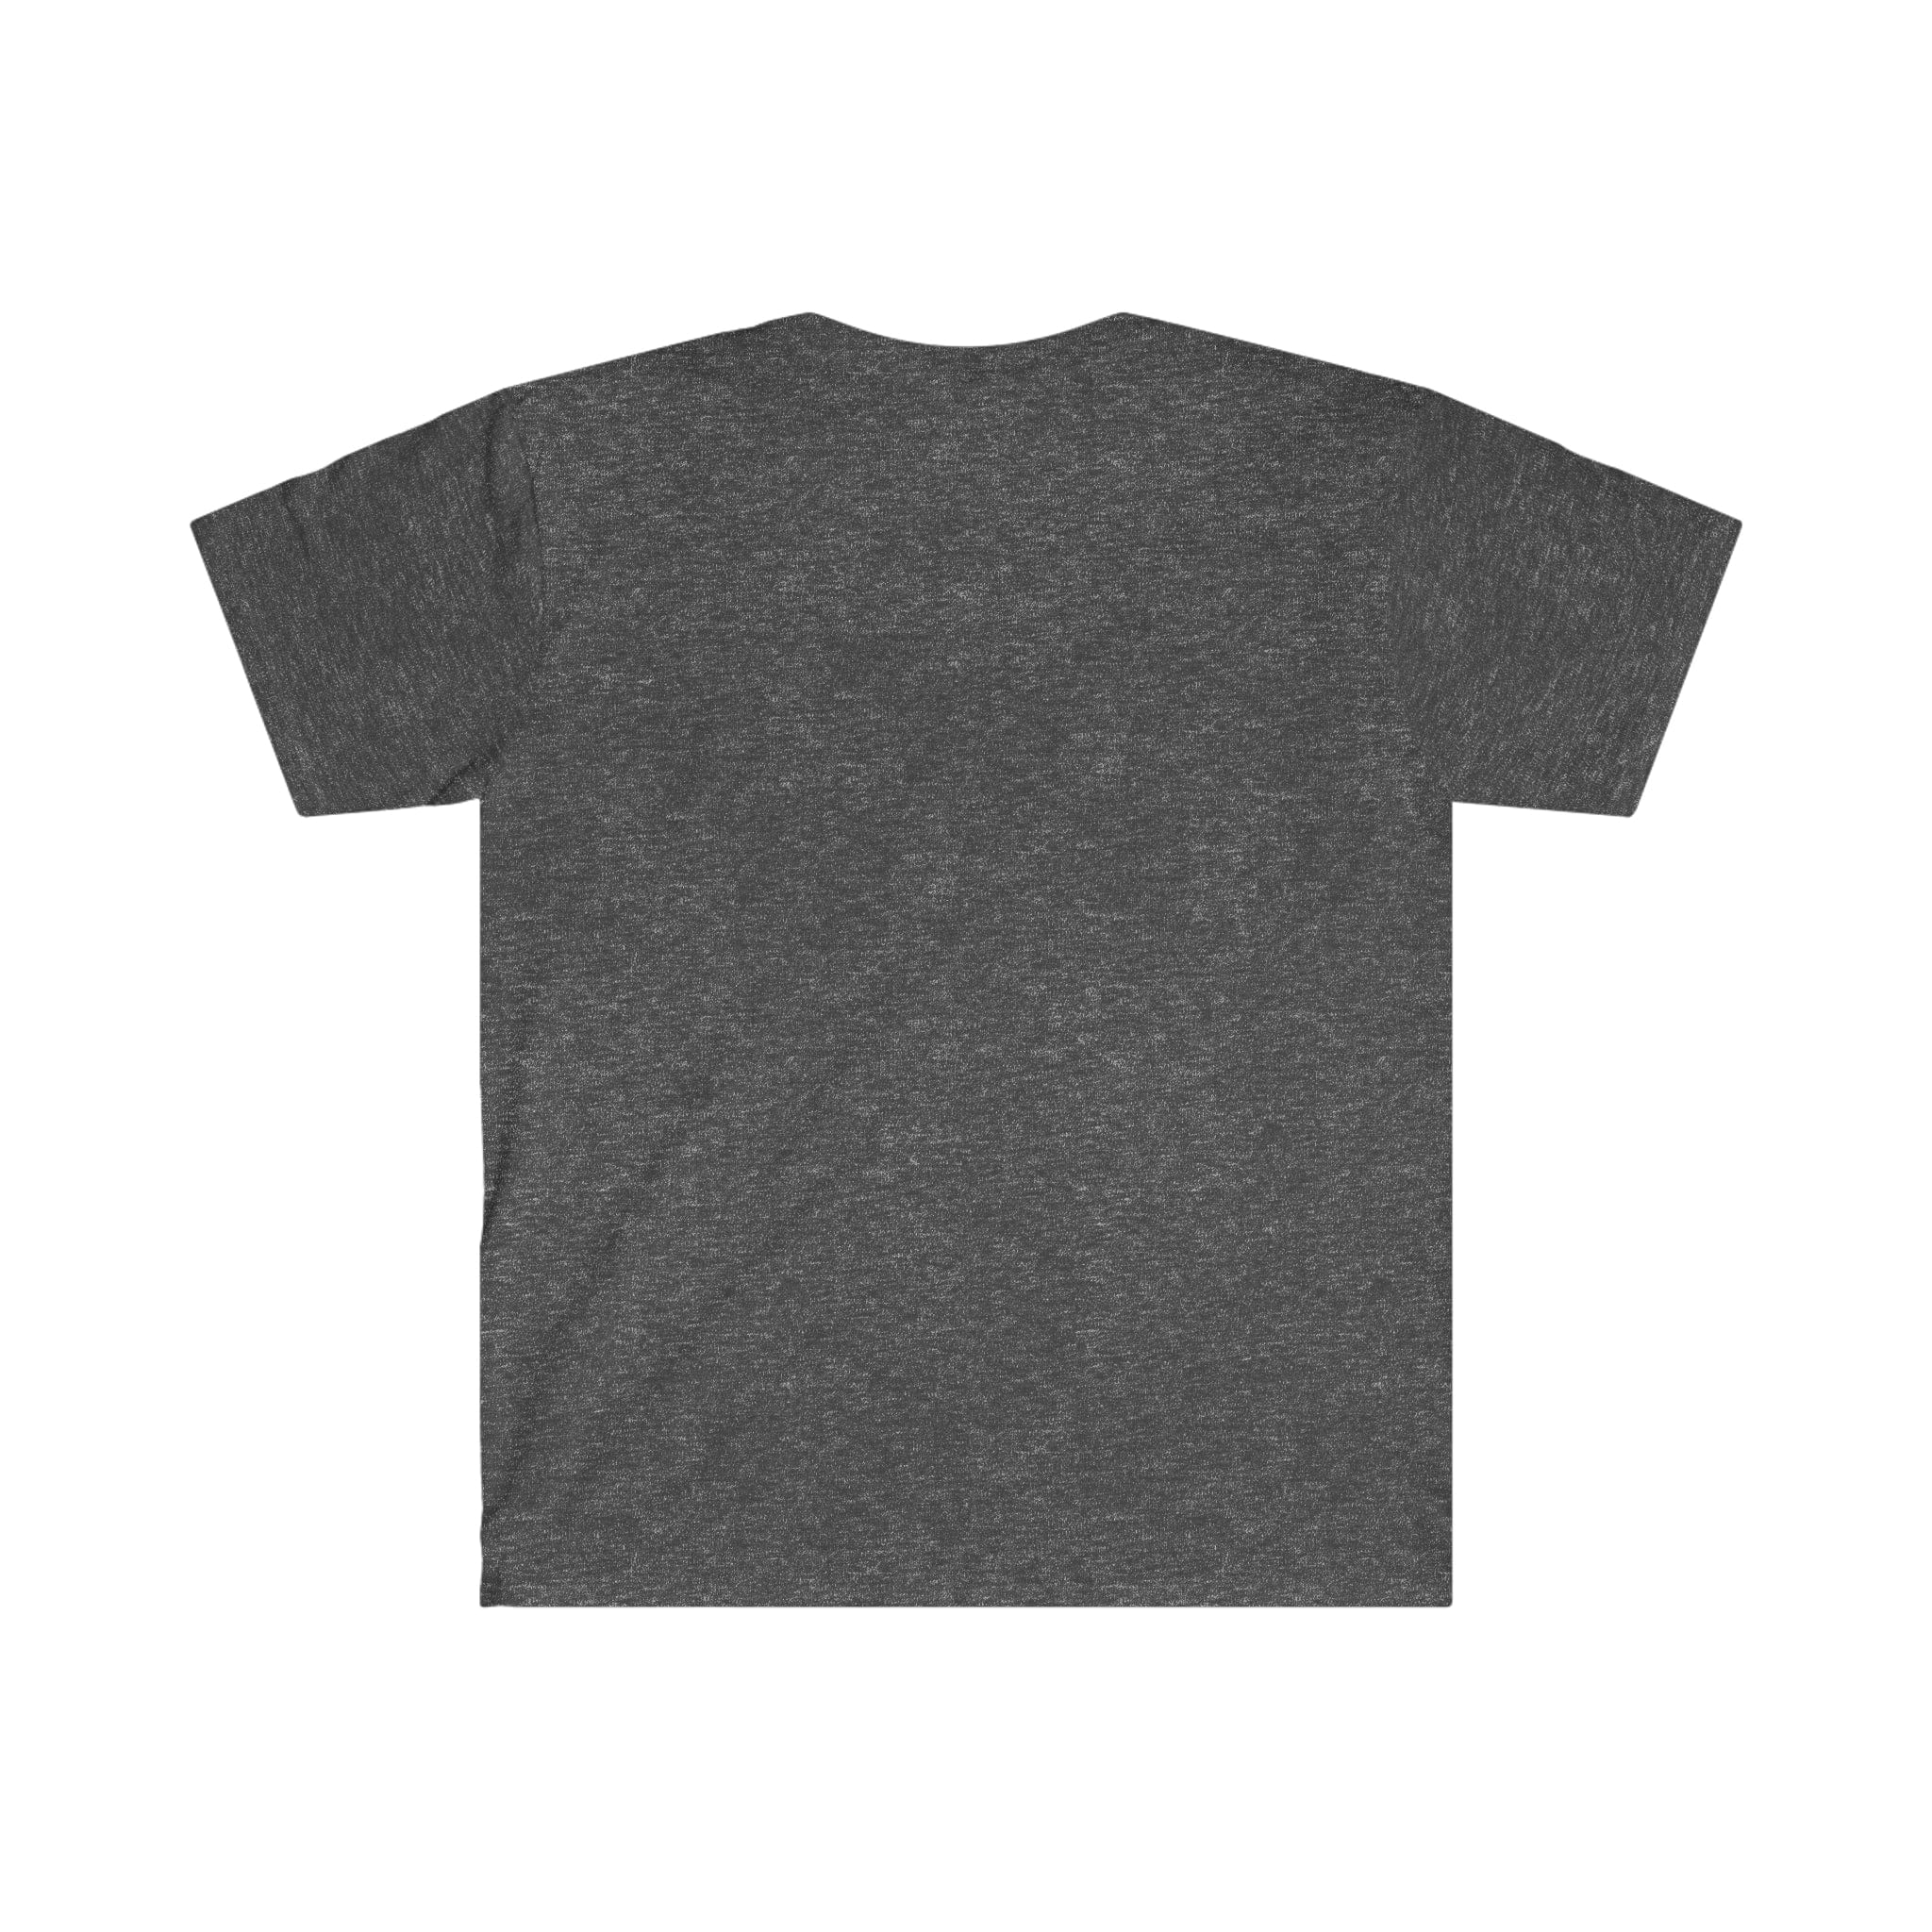 Printify T-Shirt Music City - Unisex Softstyle T-Shirt